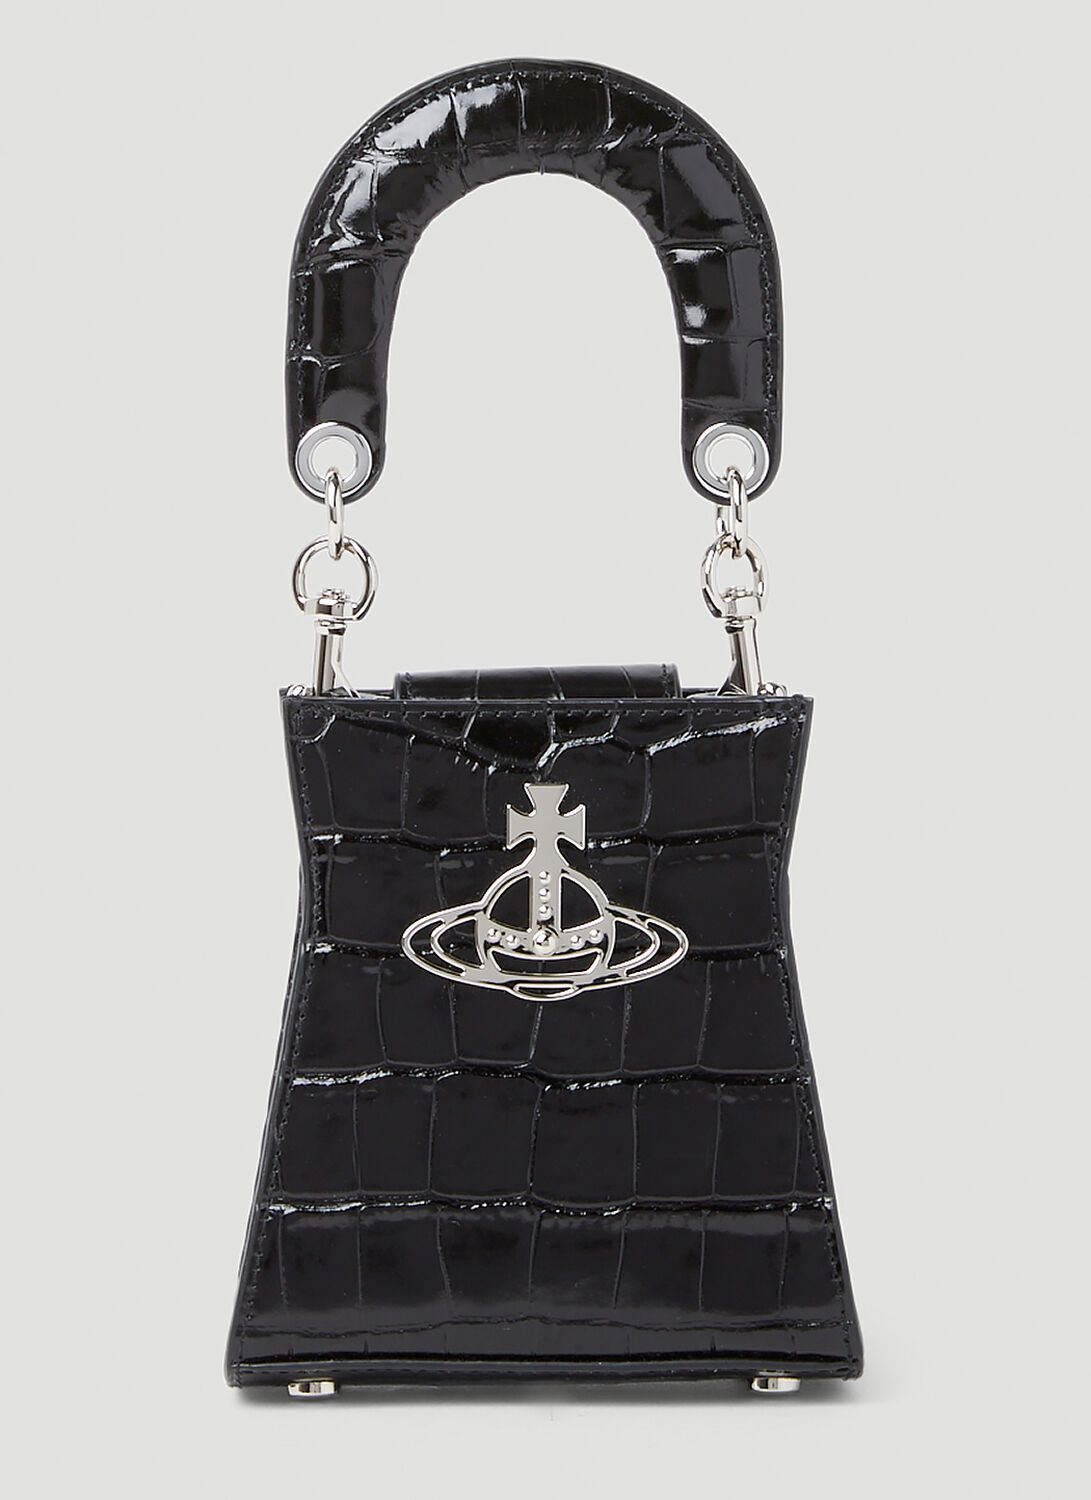 Vivienne Westwood Saffiano Leather Shoulder Hand Bag Orb Black Japan MINT